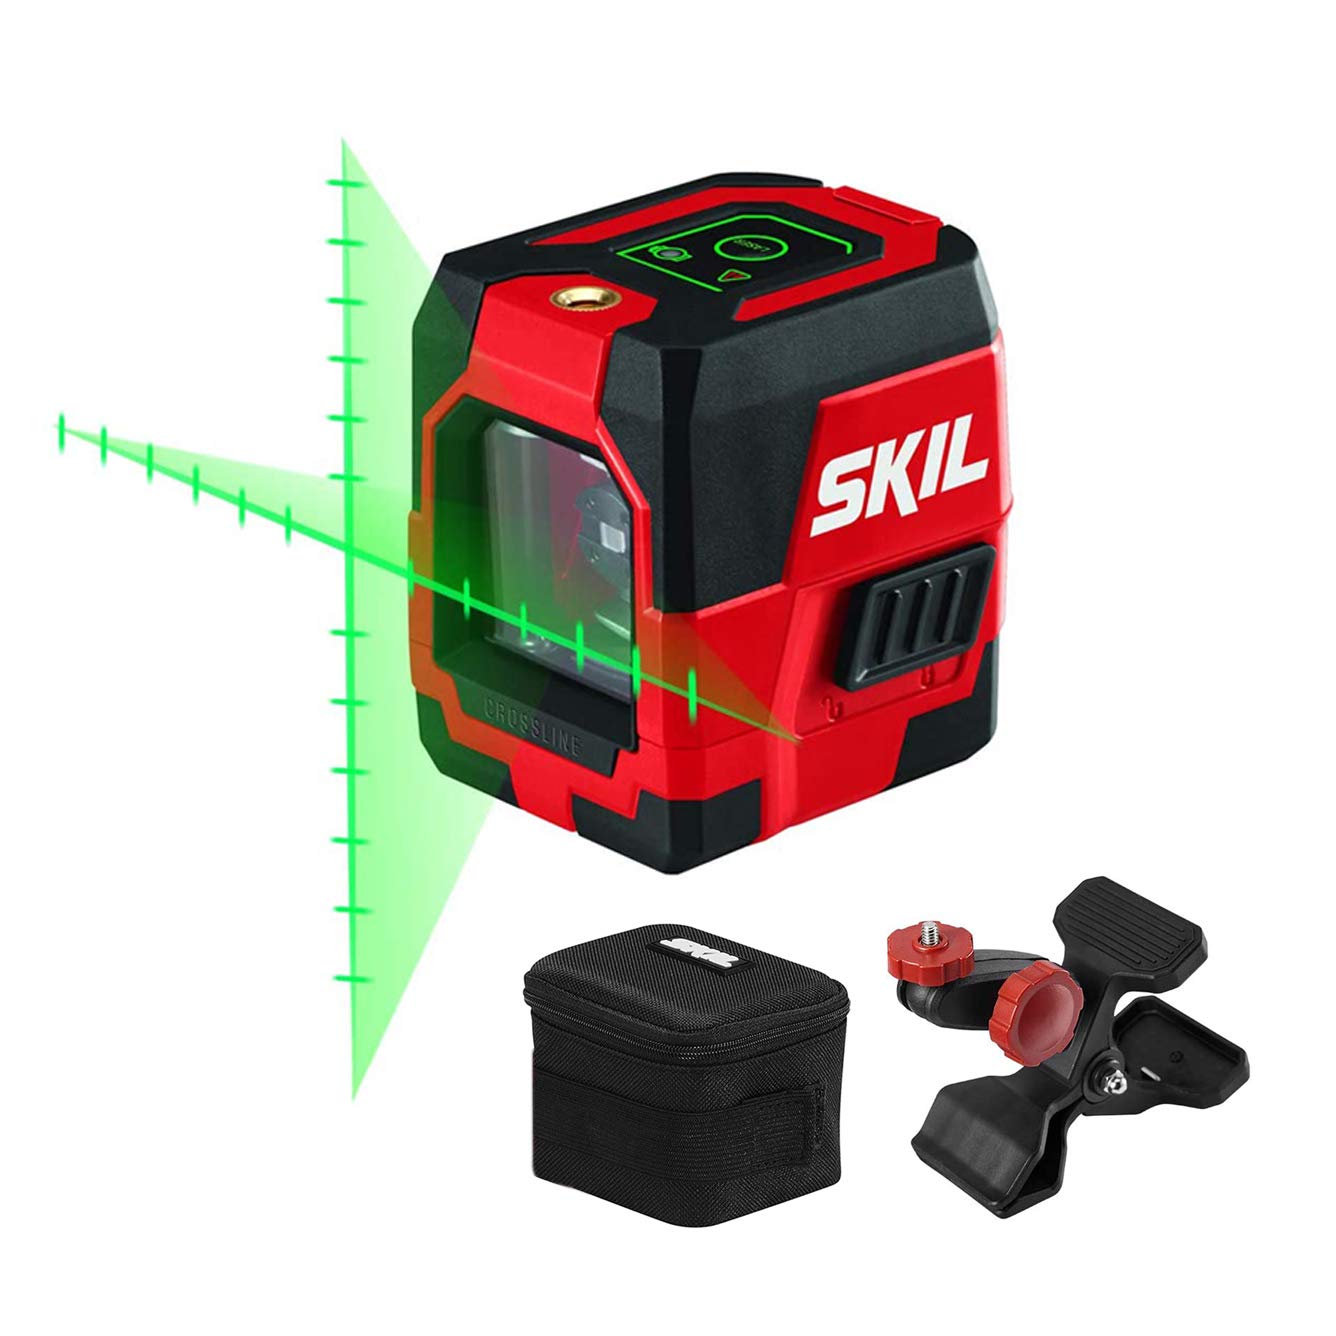 Skil 投影された測定マークを備えたセルフレベリンググリーンクロスラインレーザー